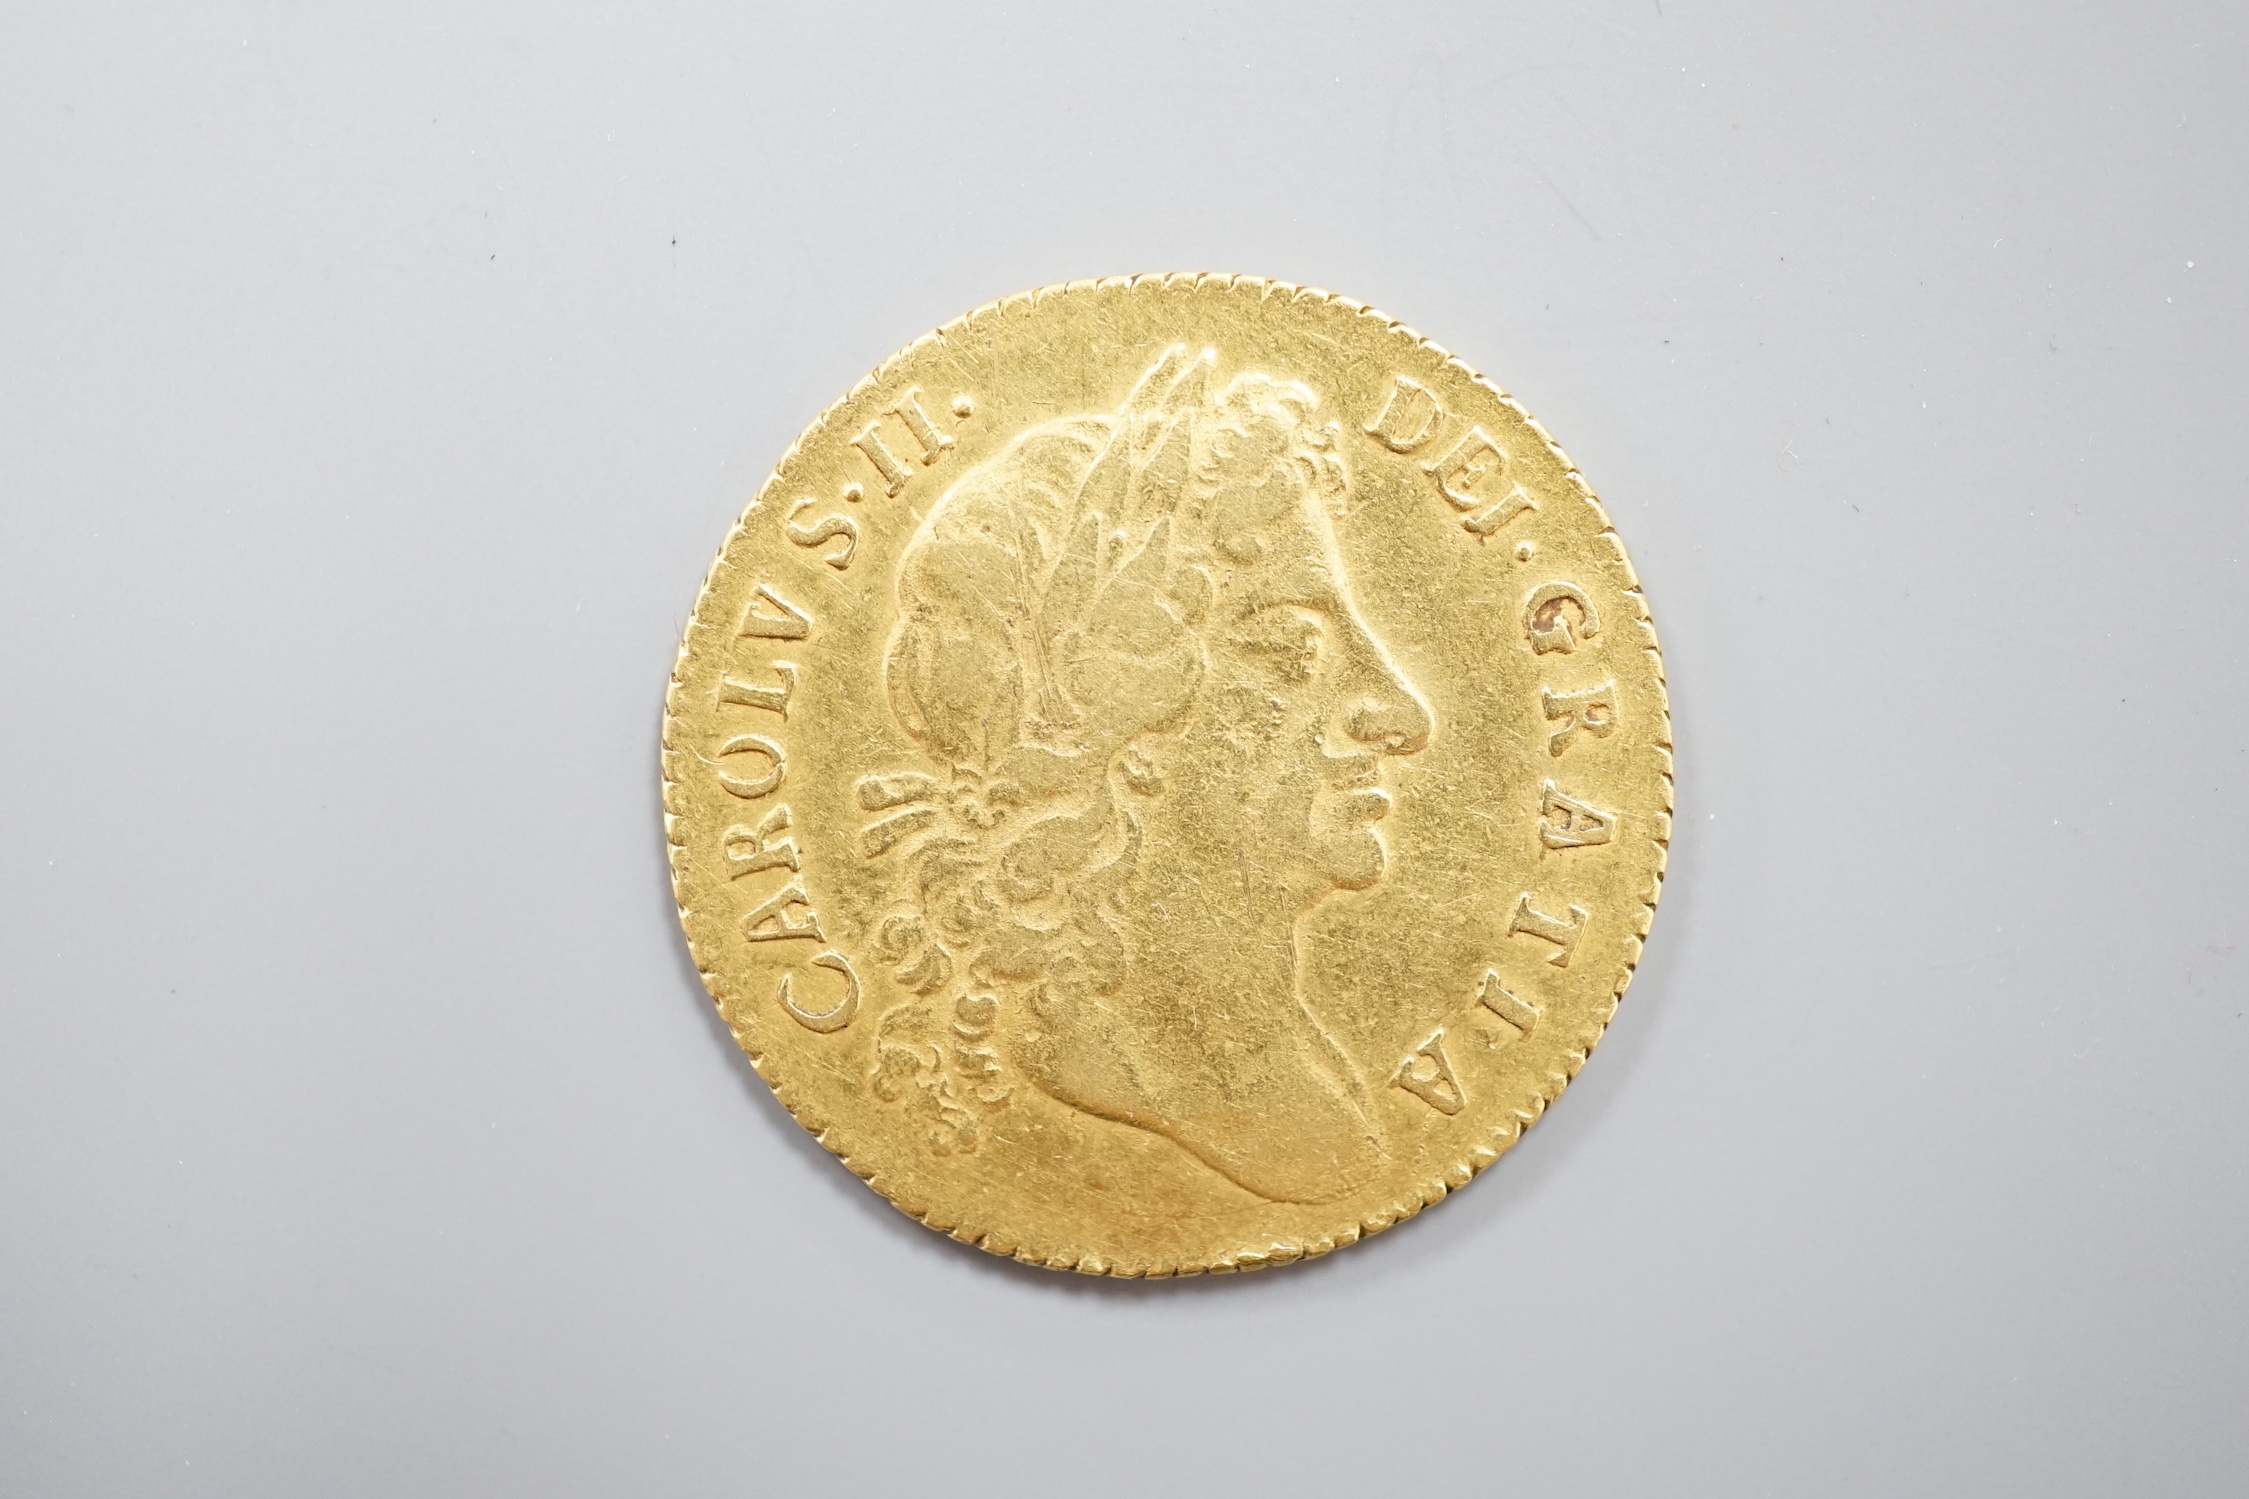 A Charles II gold guinea, 1676, F/VF.